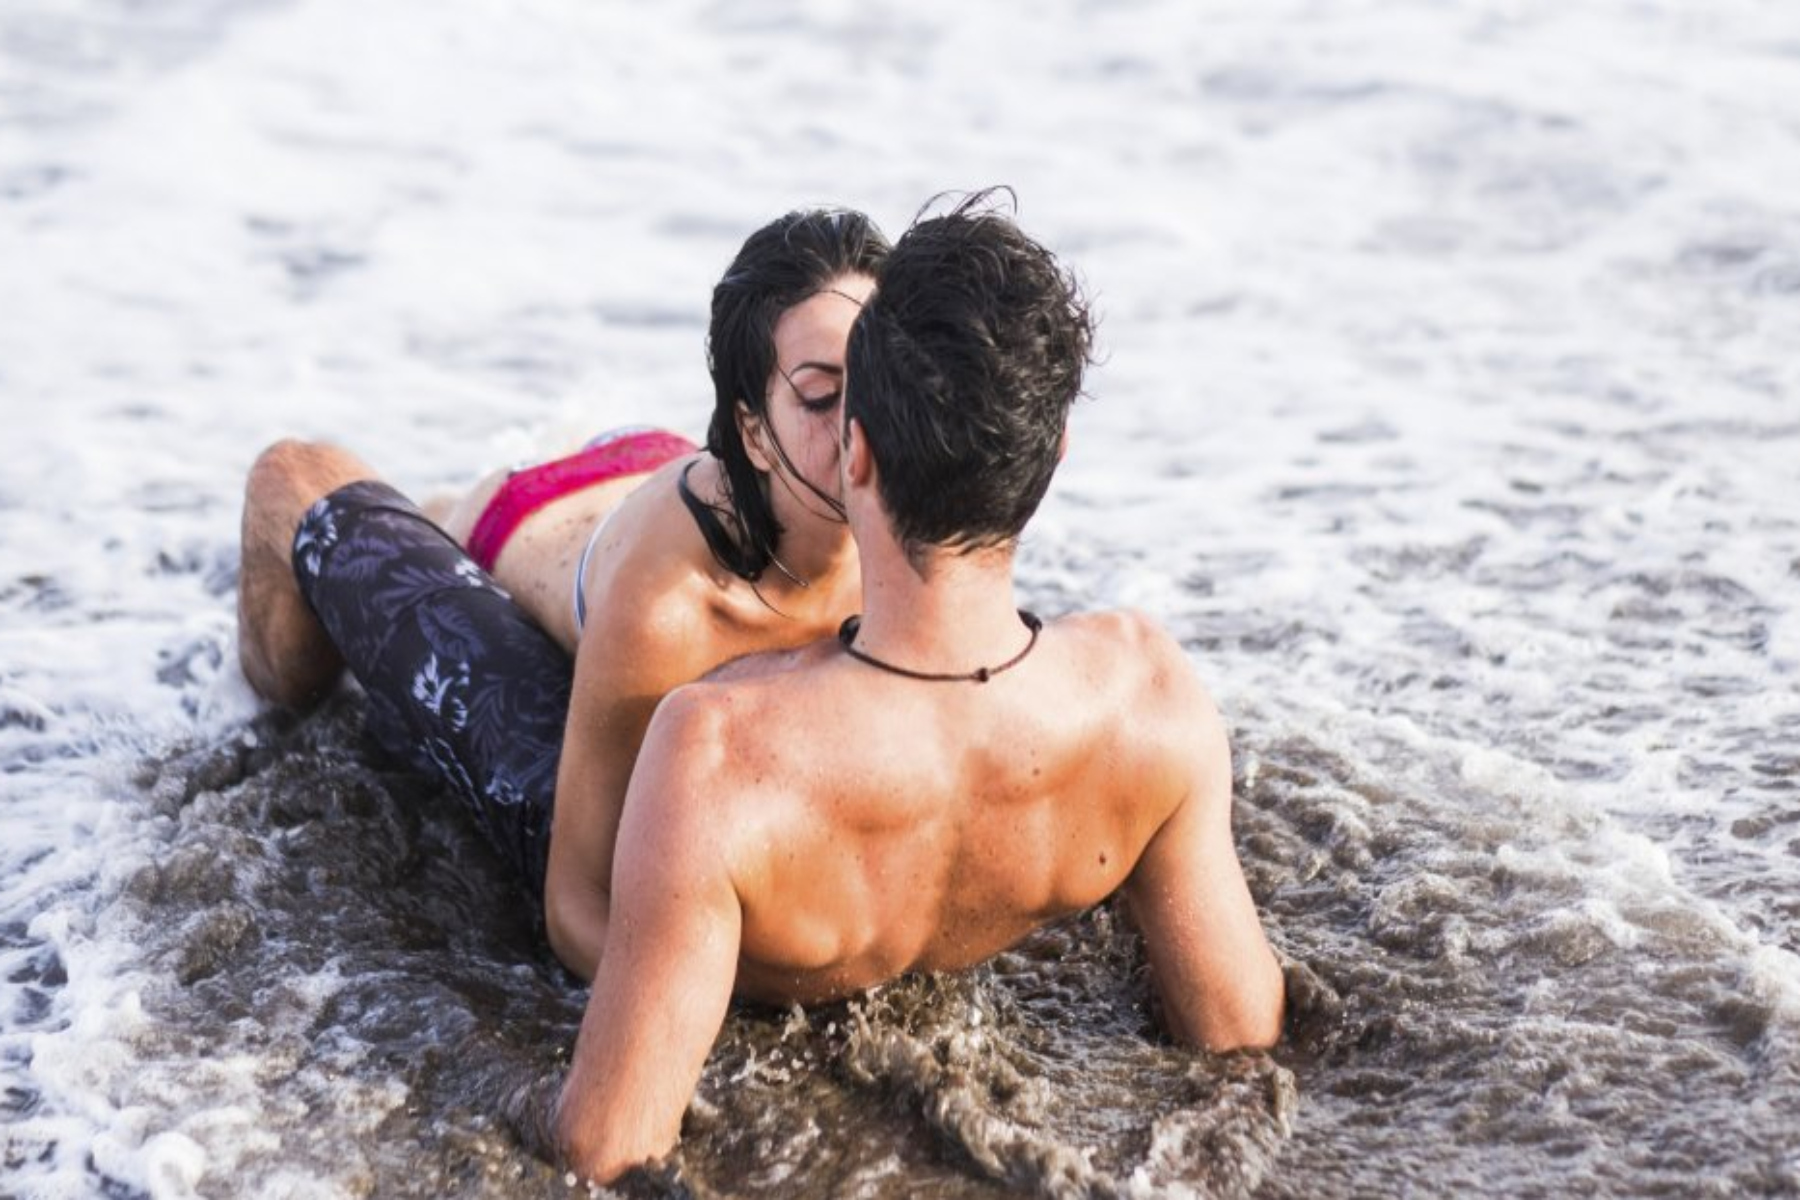 Σεξ θάλασσα: Το σεξ στη θάλασσα ελλοχεύει κινδύνους;